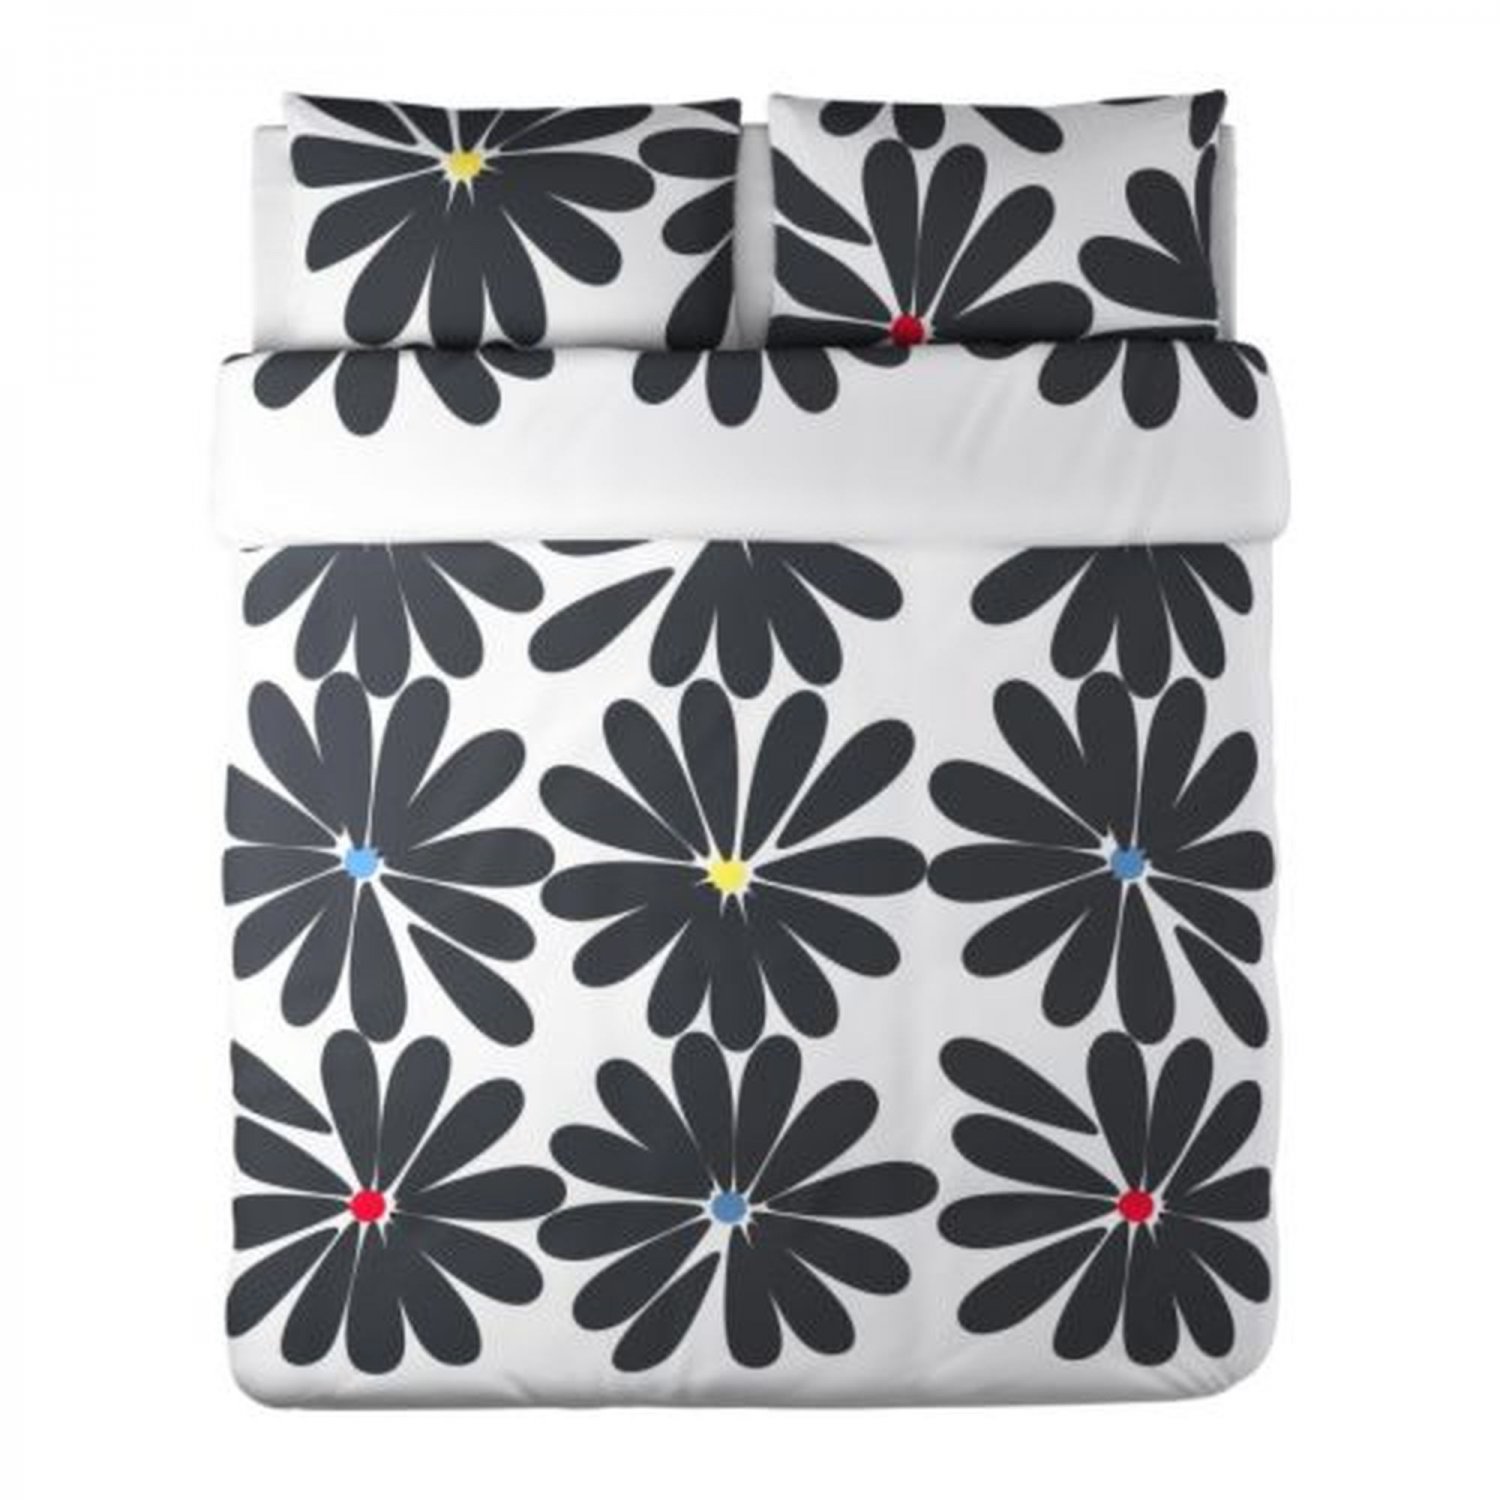 Ikea Hedda Blom King Duvet Cover Set Black White Floral